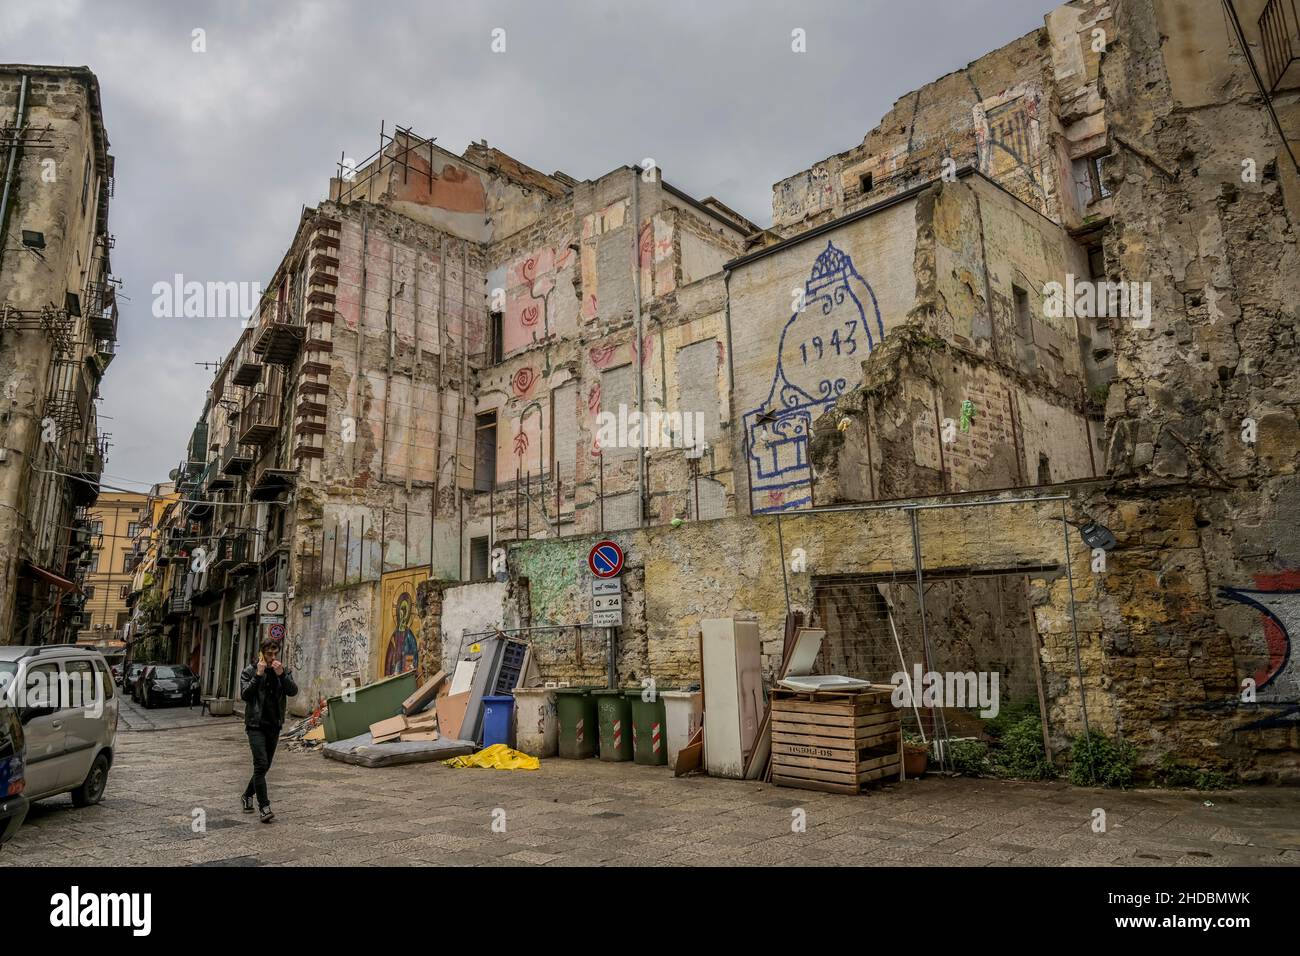 Wohnhaus Ruine, Altstadt, Palermo, Sizilien, Italien Foto de stock